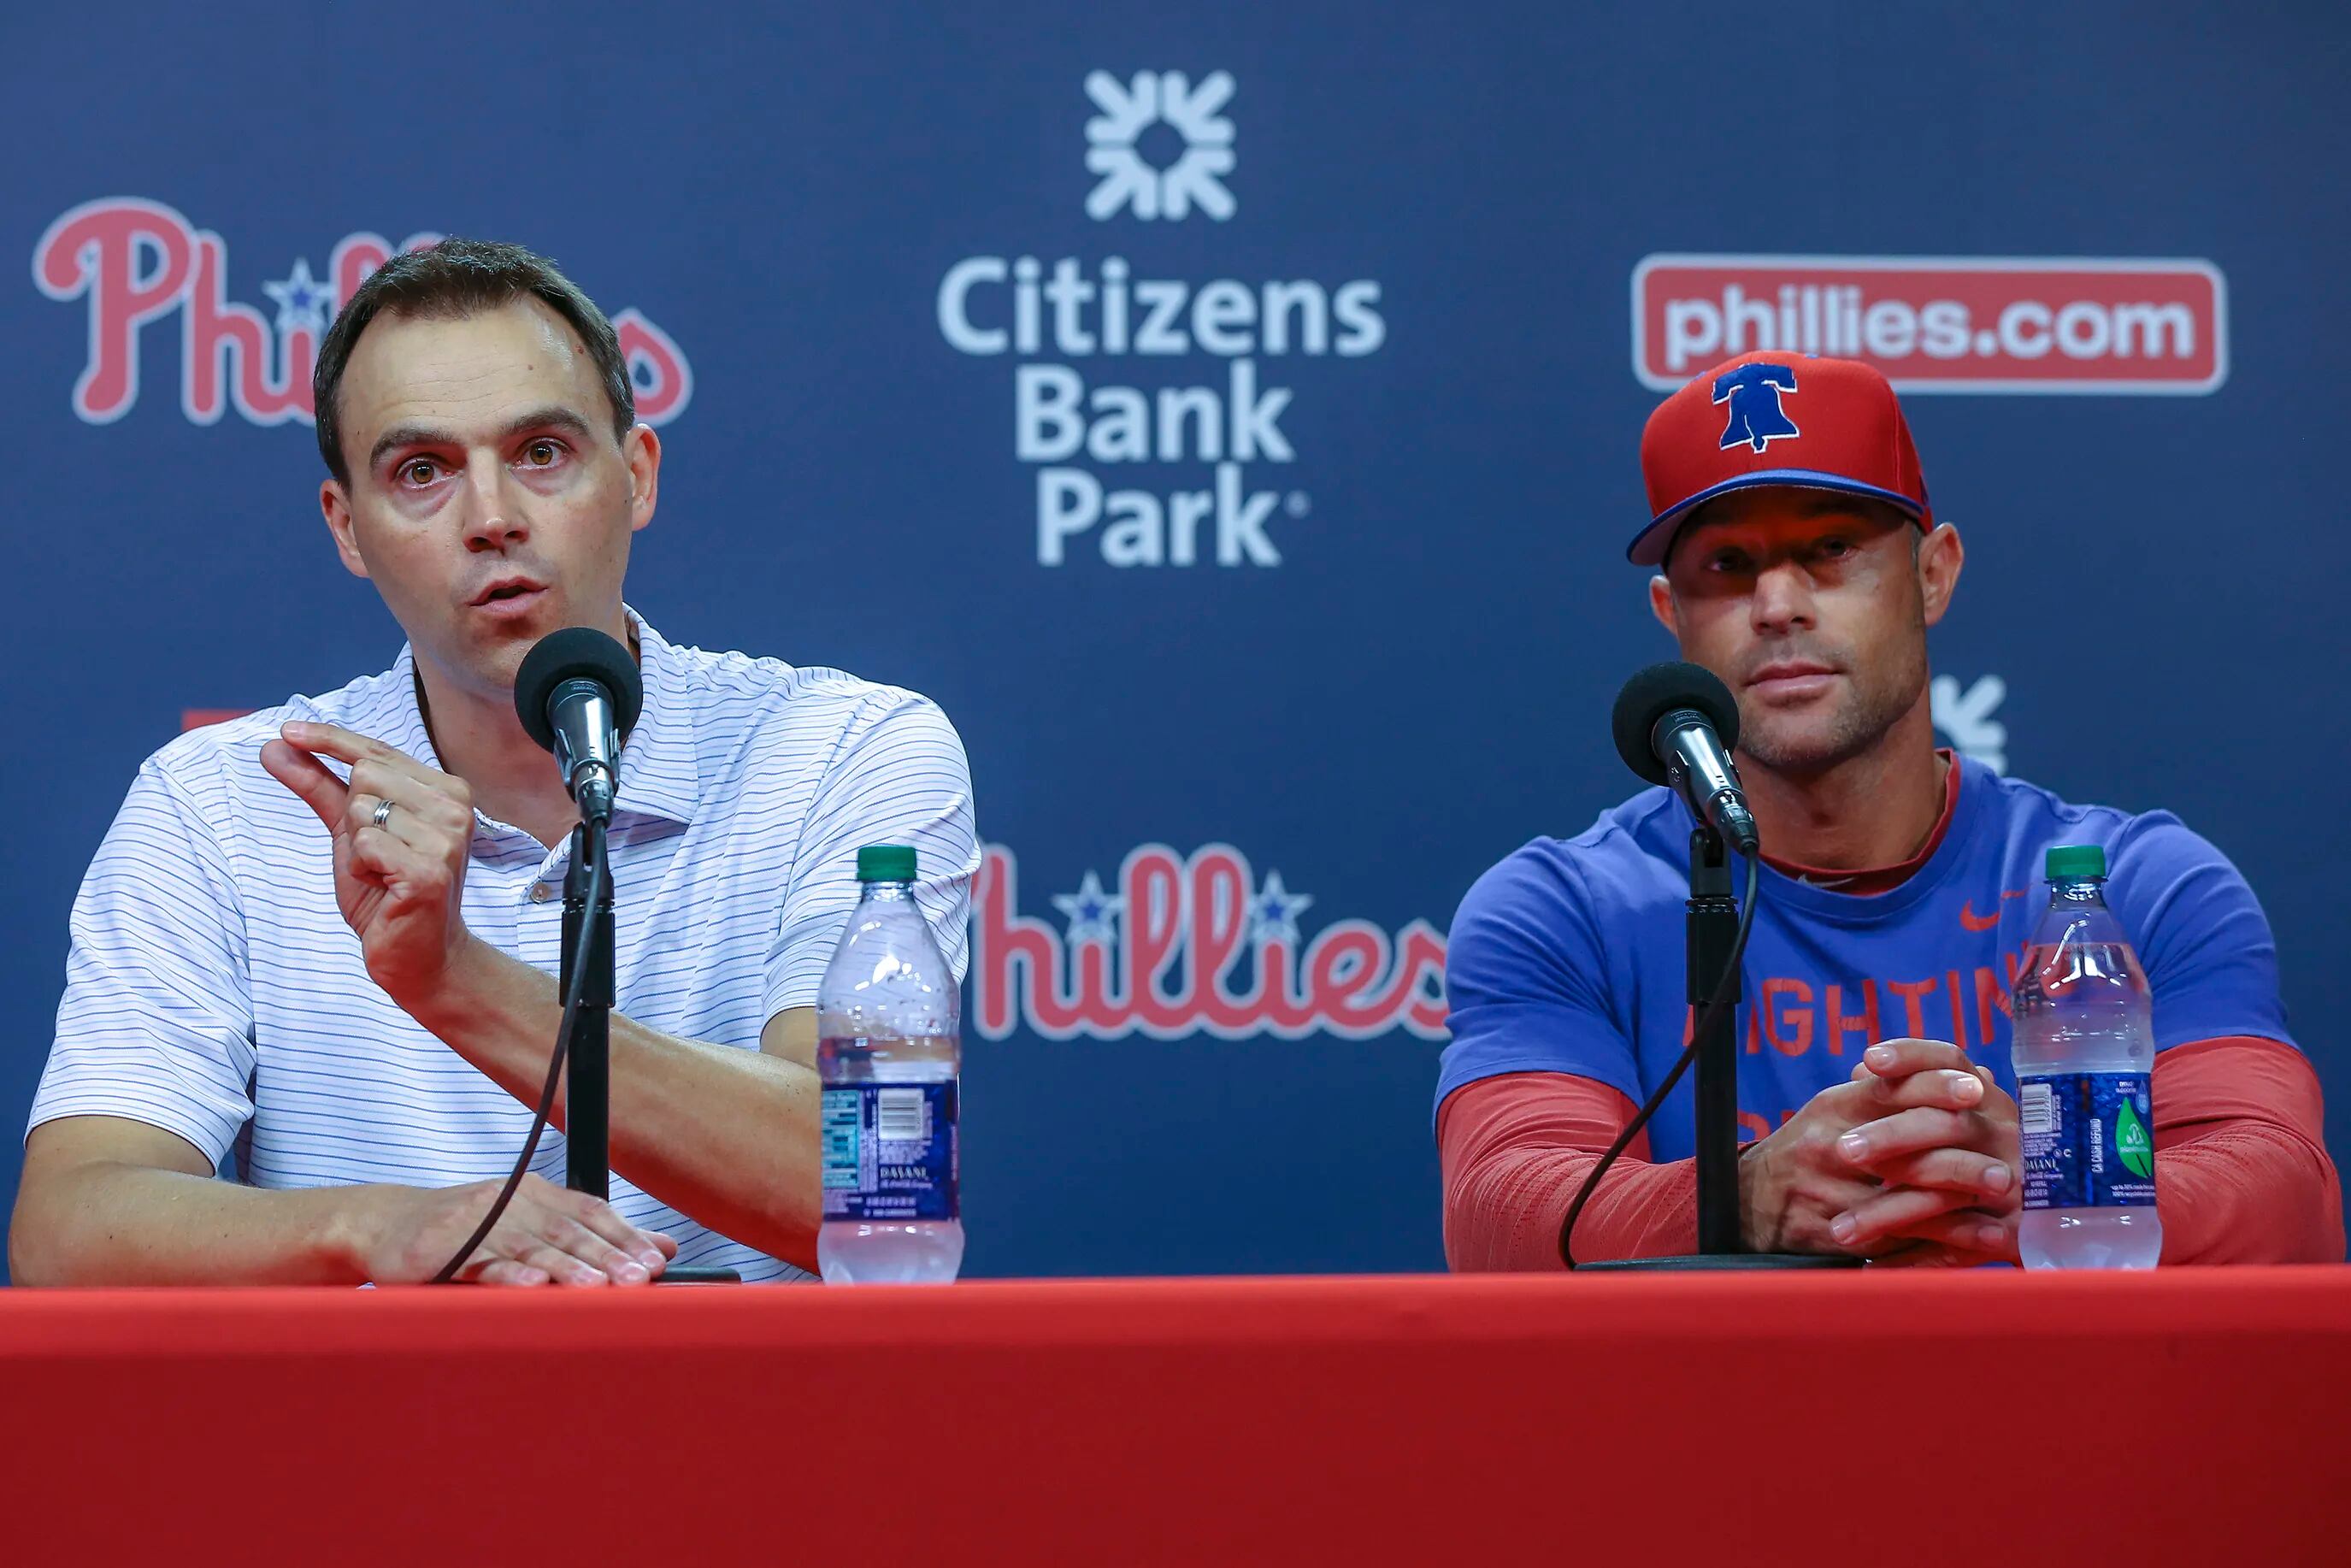 Phillies' Kapler argues McCutchen injury with radio host